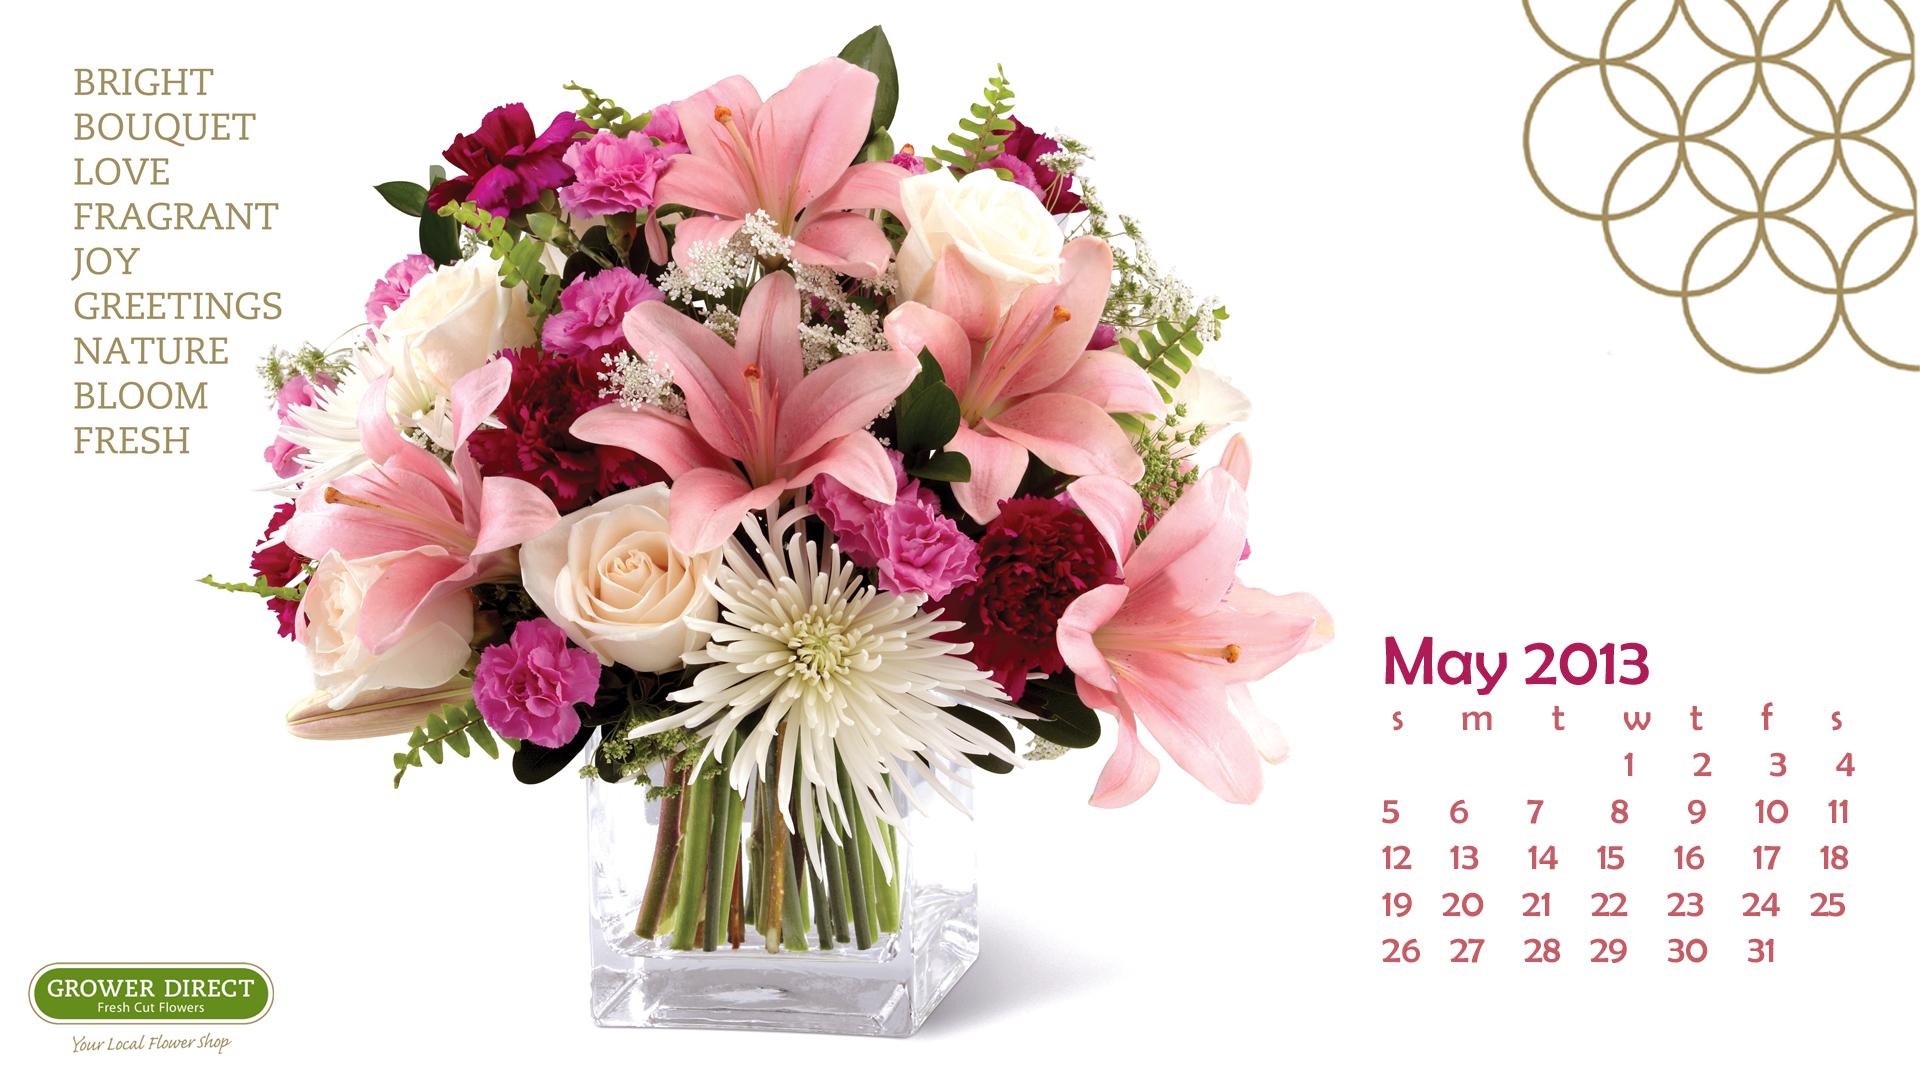  May 2013 Desktop Calendar Wallpapers Grower Direct Fresh Cut Flowers 1920x1080